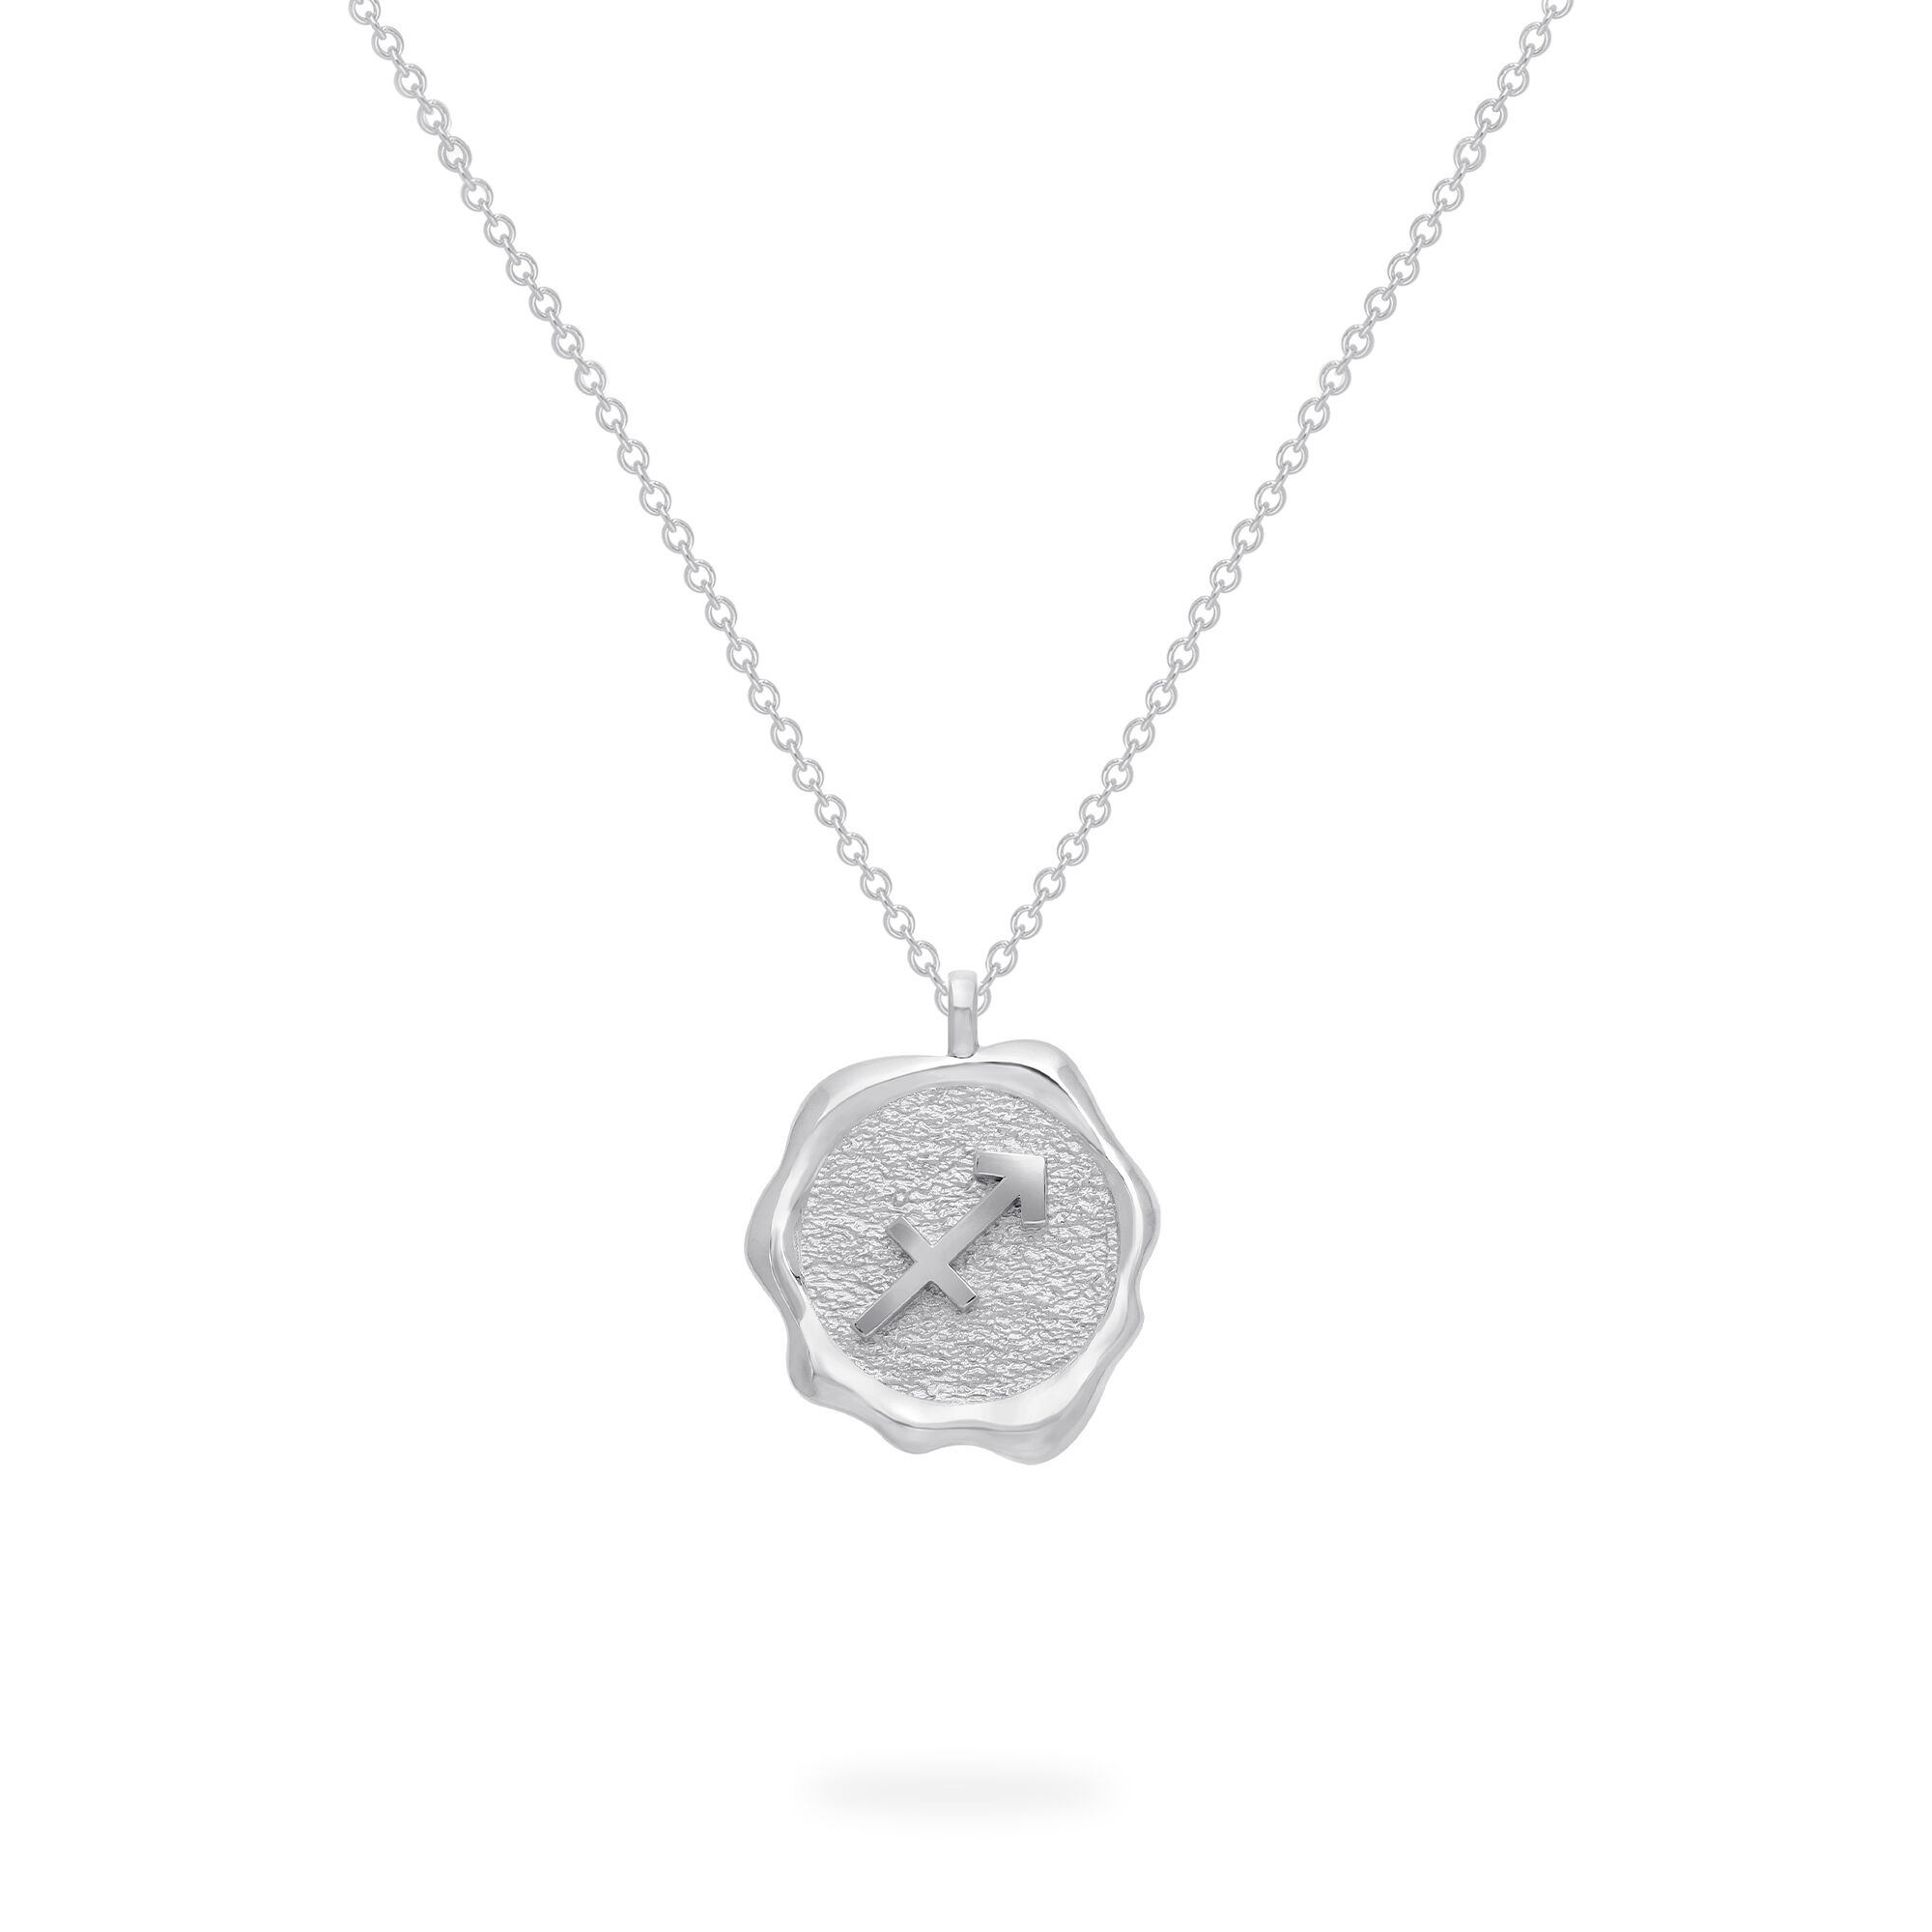 Zodiac Sagittarius Necklace in Sterling Silver | Birks Essentials